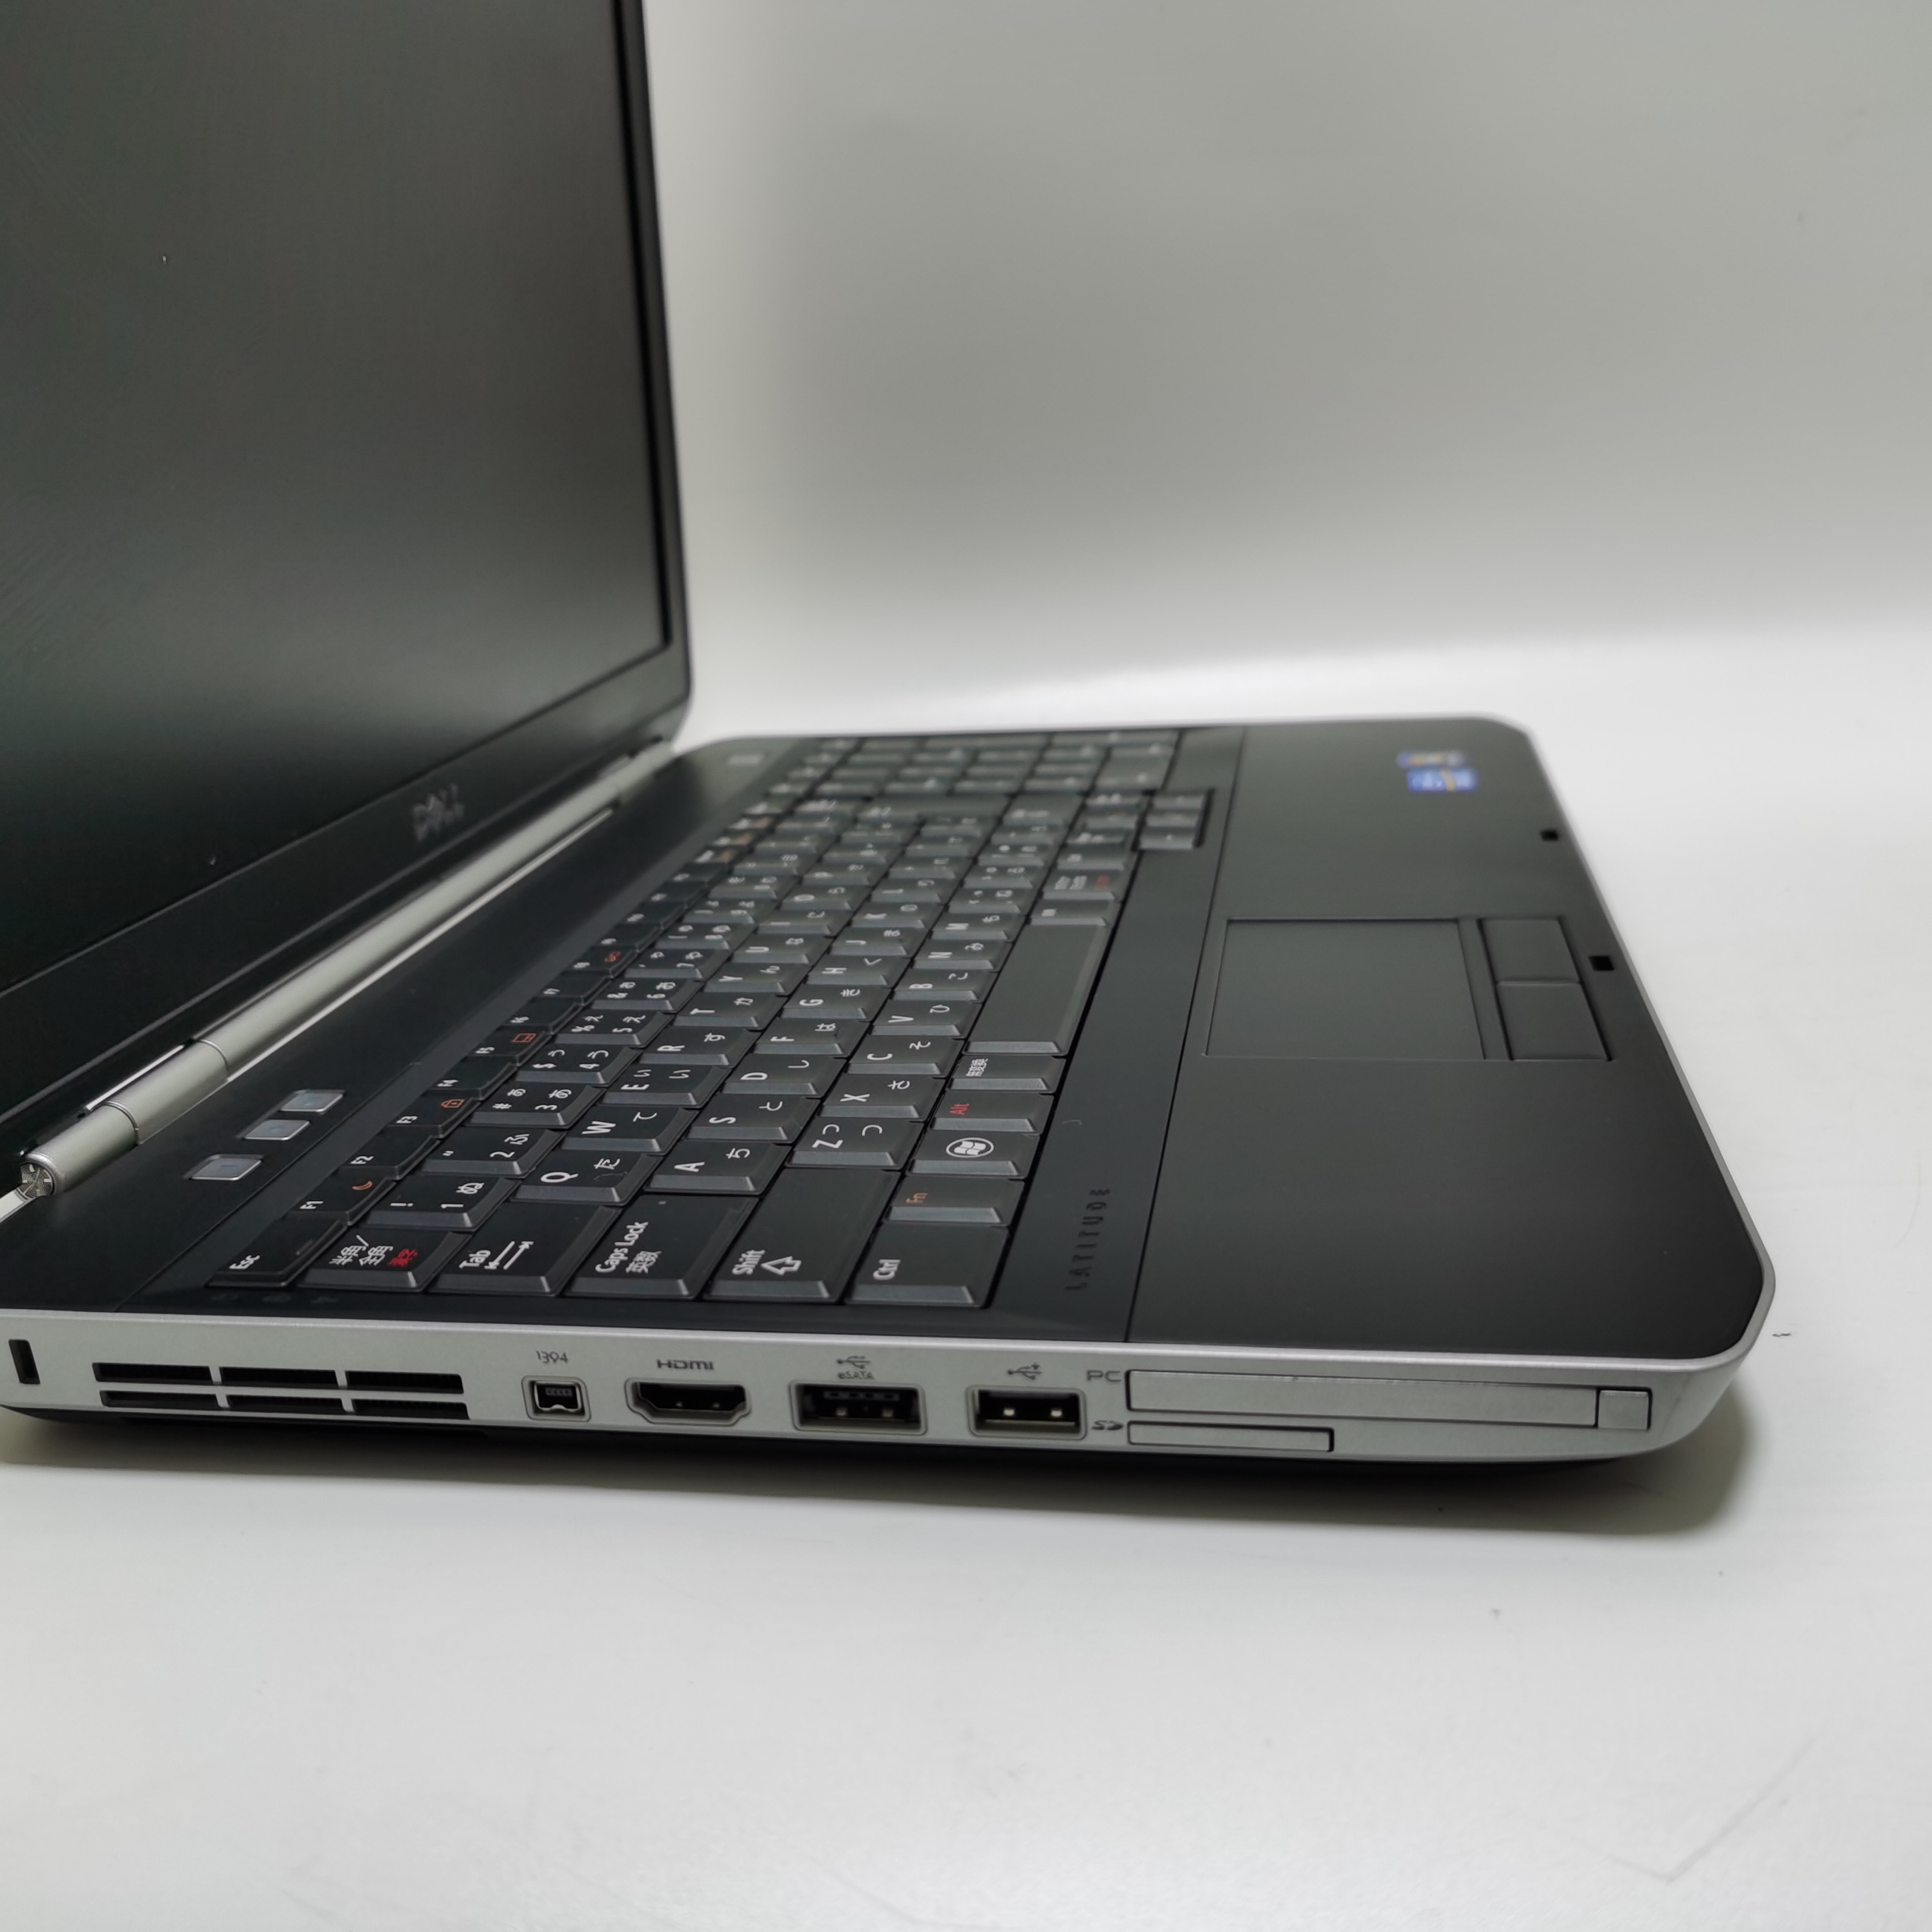 มุมมองเพิ่มเติมของสินค้า โน๊ตบุ๊ค notebook Dell E5530 i5 gen3 15.6 inch  //  Lenovo ThinkPad  M14 โน๊ตบุ๊คมือสอง  โน๊ตบุ๊คถูกๆๆ  คอมพิวเตอร์  คอม  laptop pc